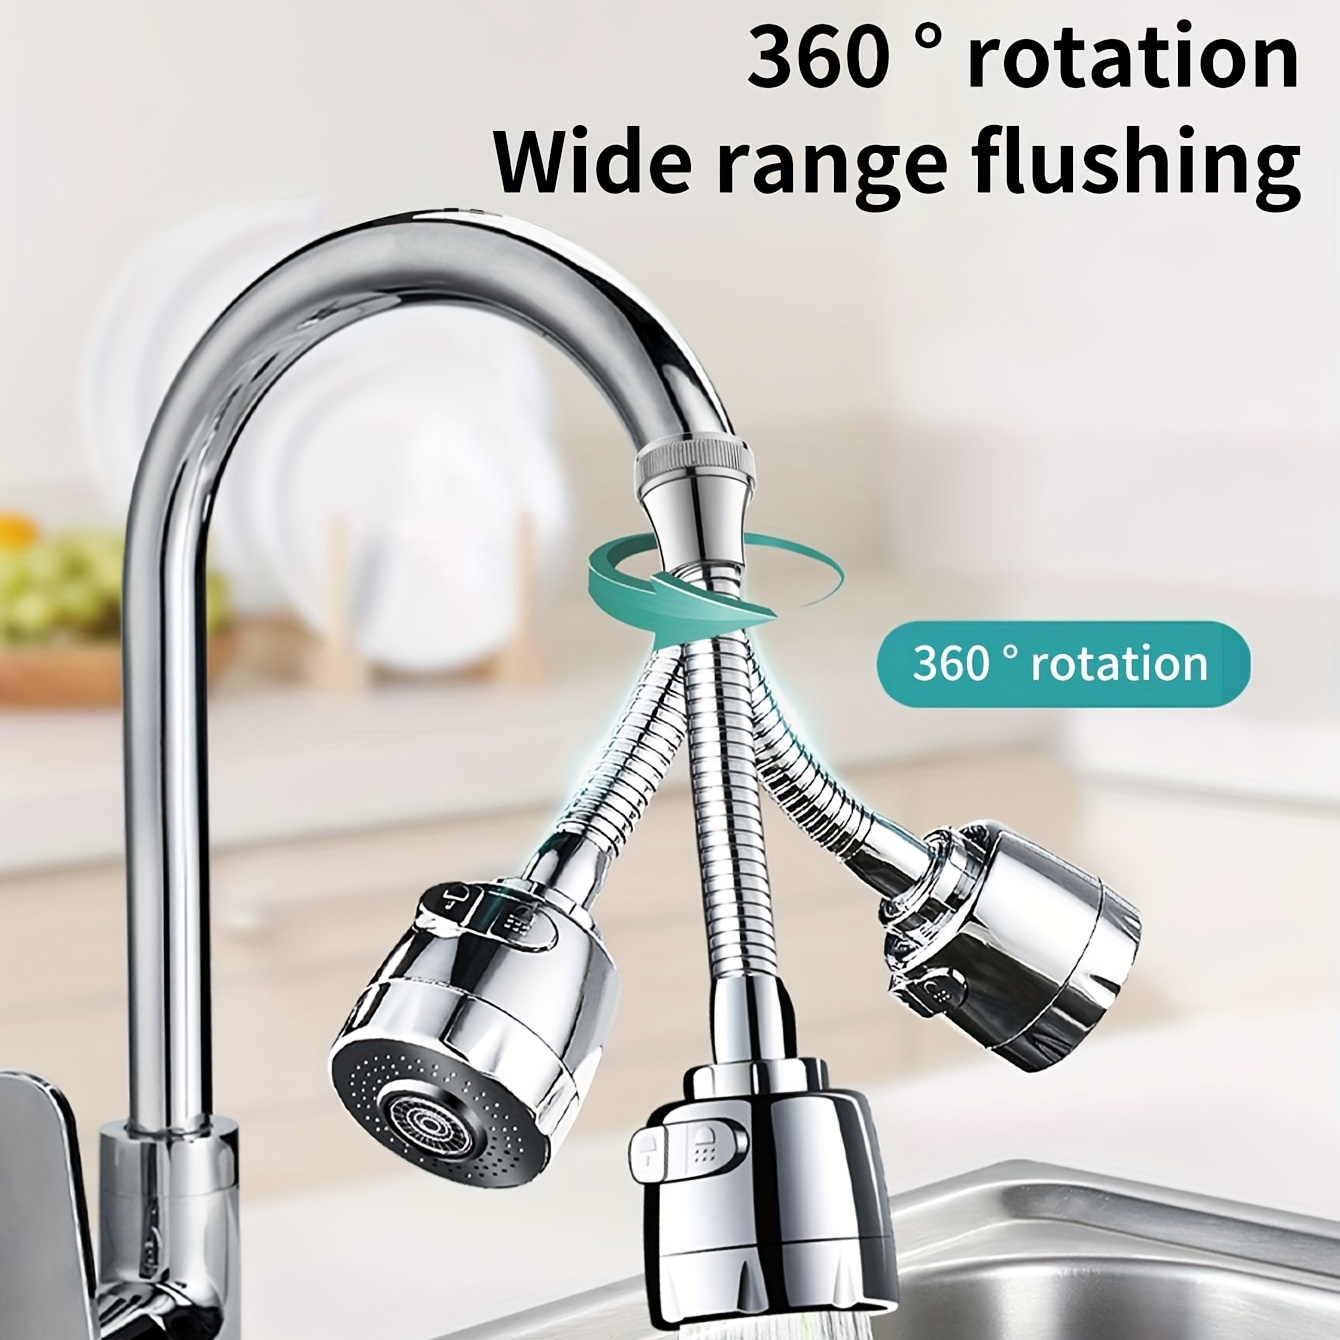 A -Prolongateur de robinet Flexible pour économie d'eau, 1 pièce